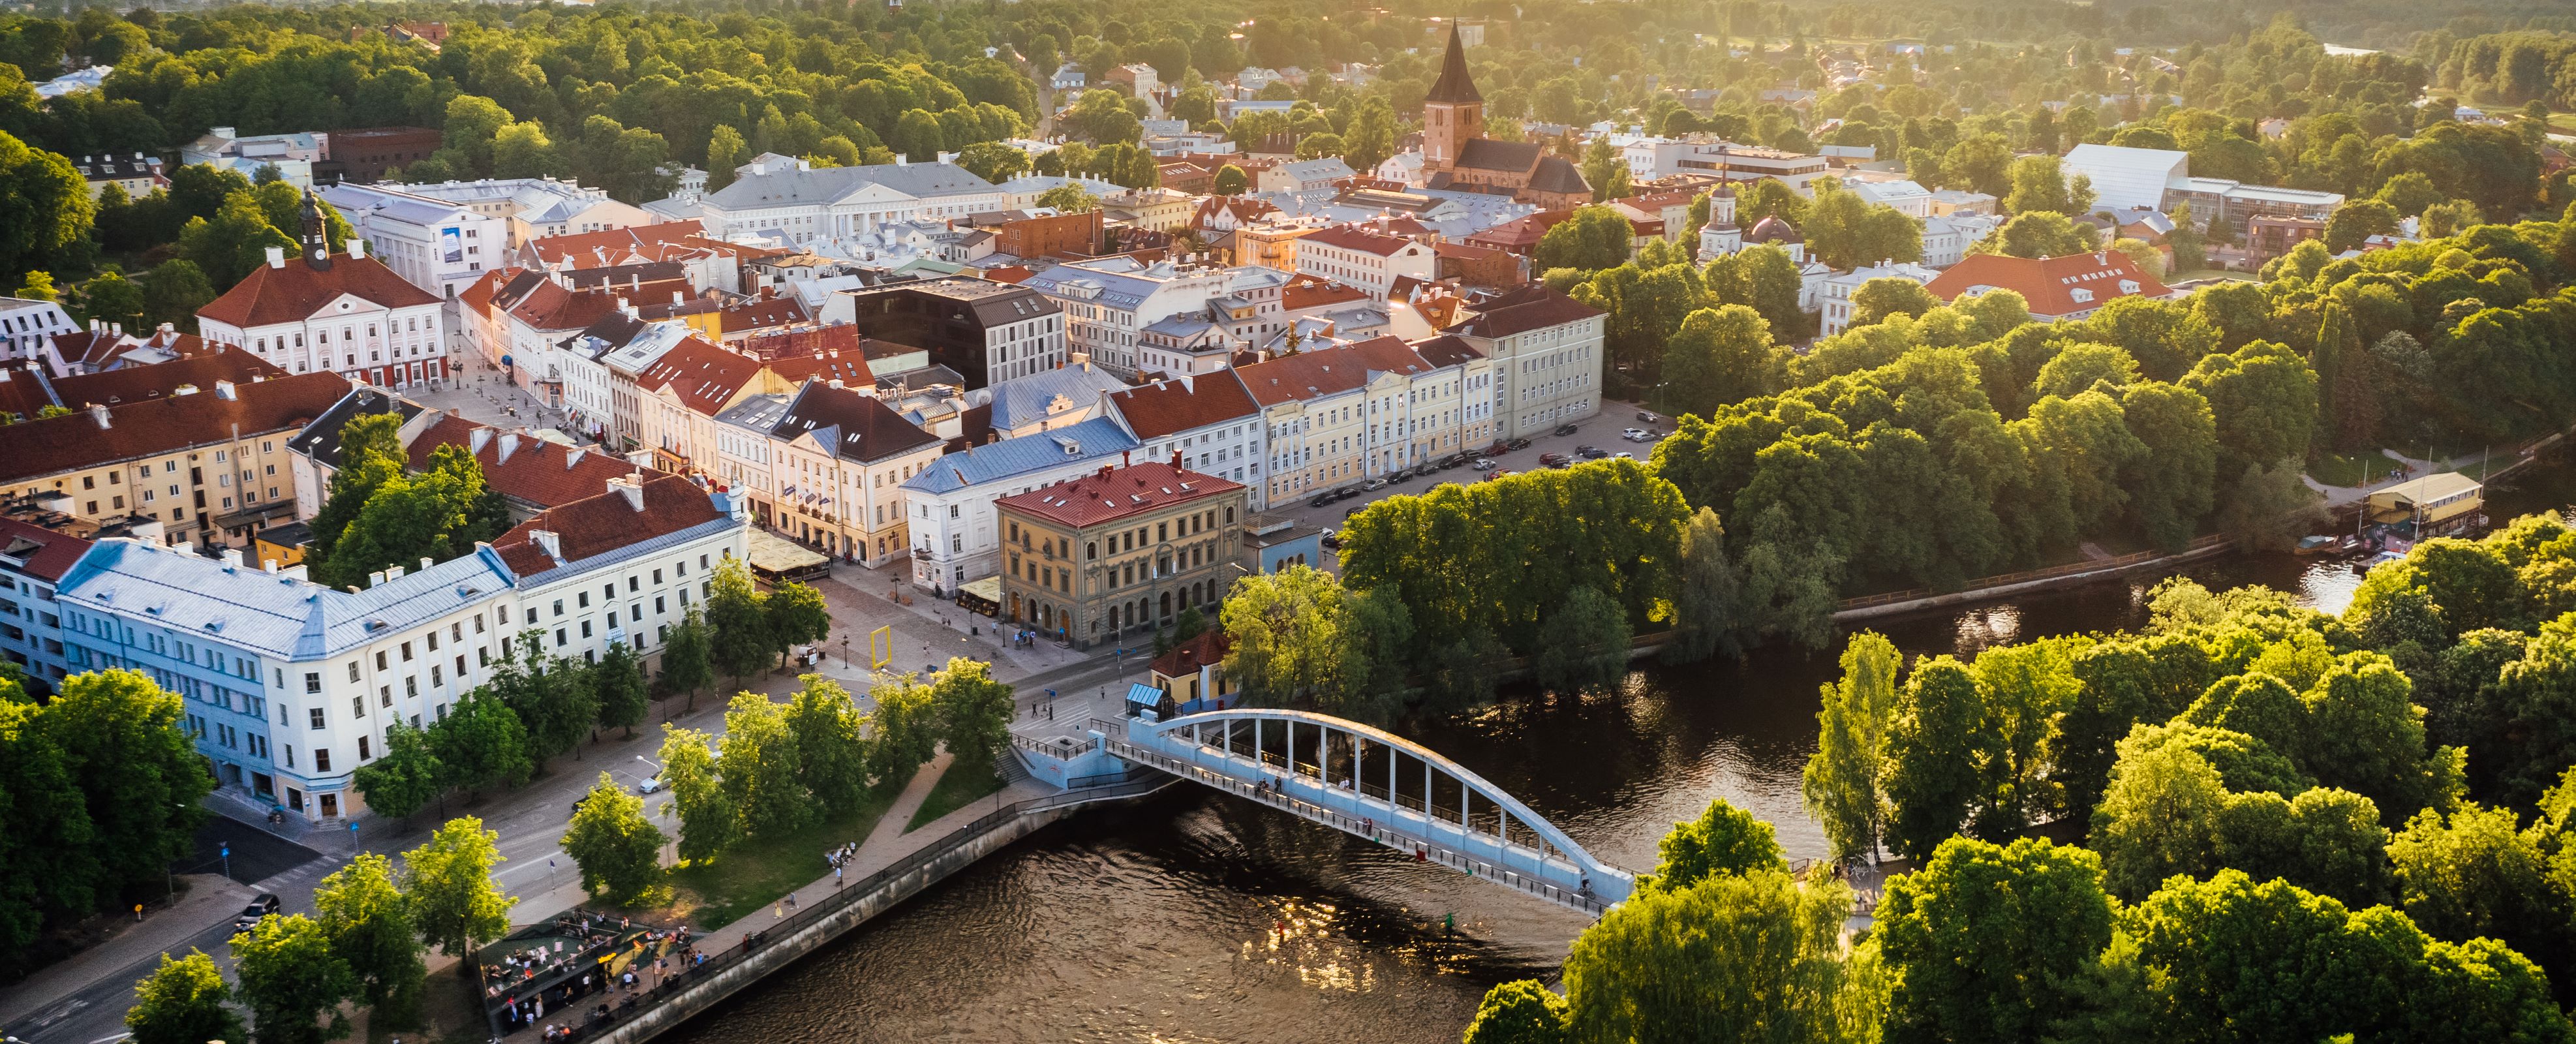 
Blick über die Stadt Tartu und die Tartu-Brücke